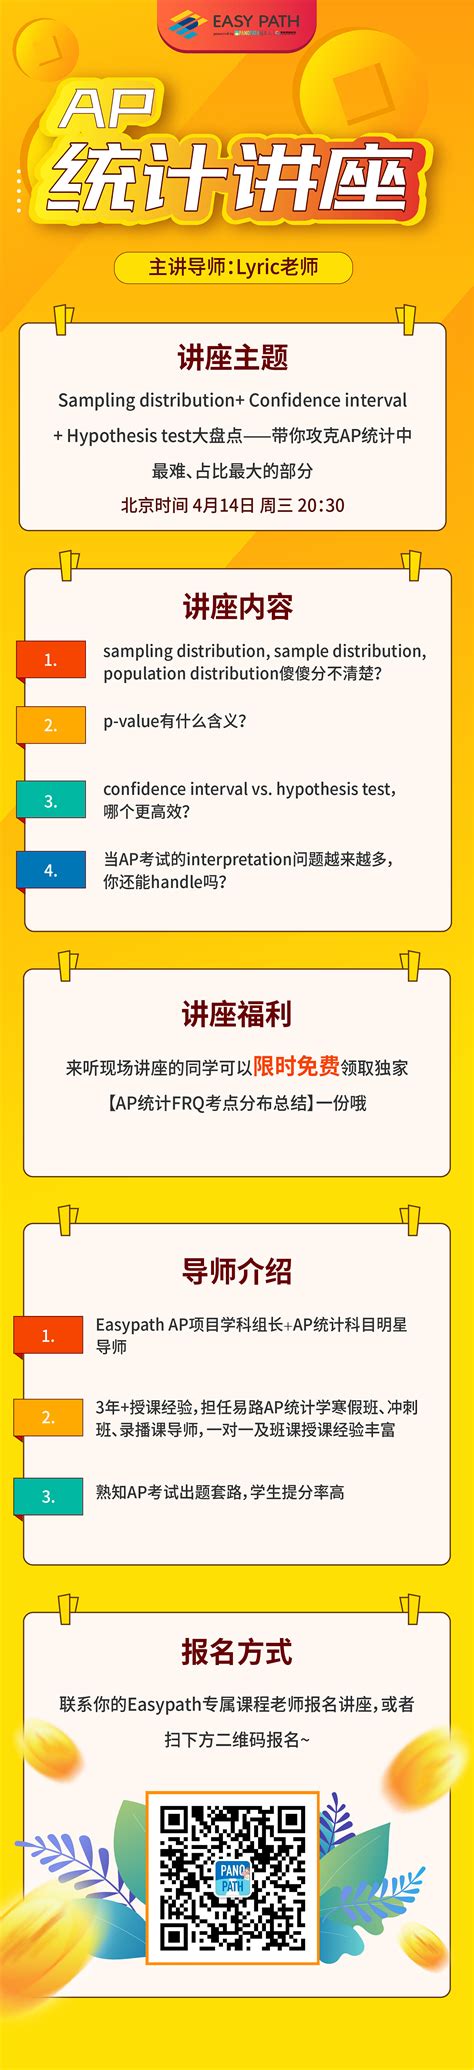 图文排版技术PPT模板素材免费下载_红动中国